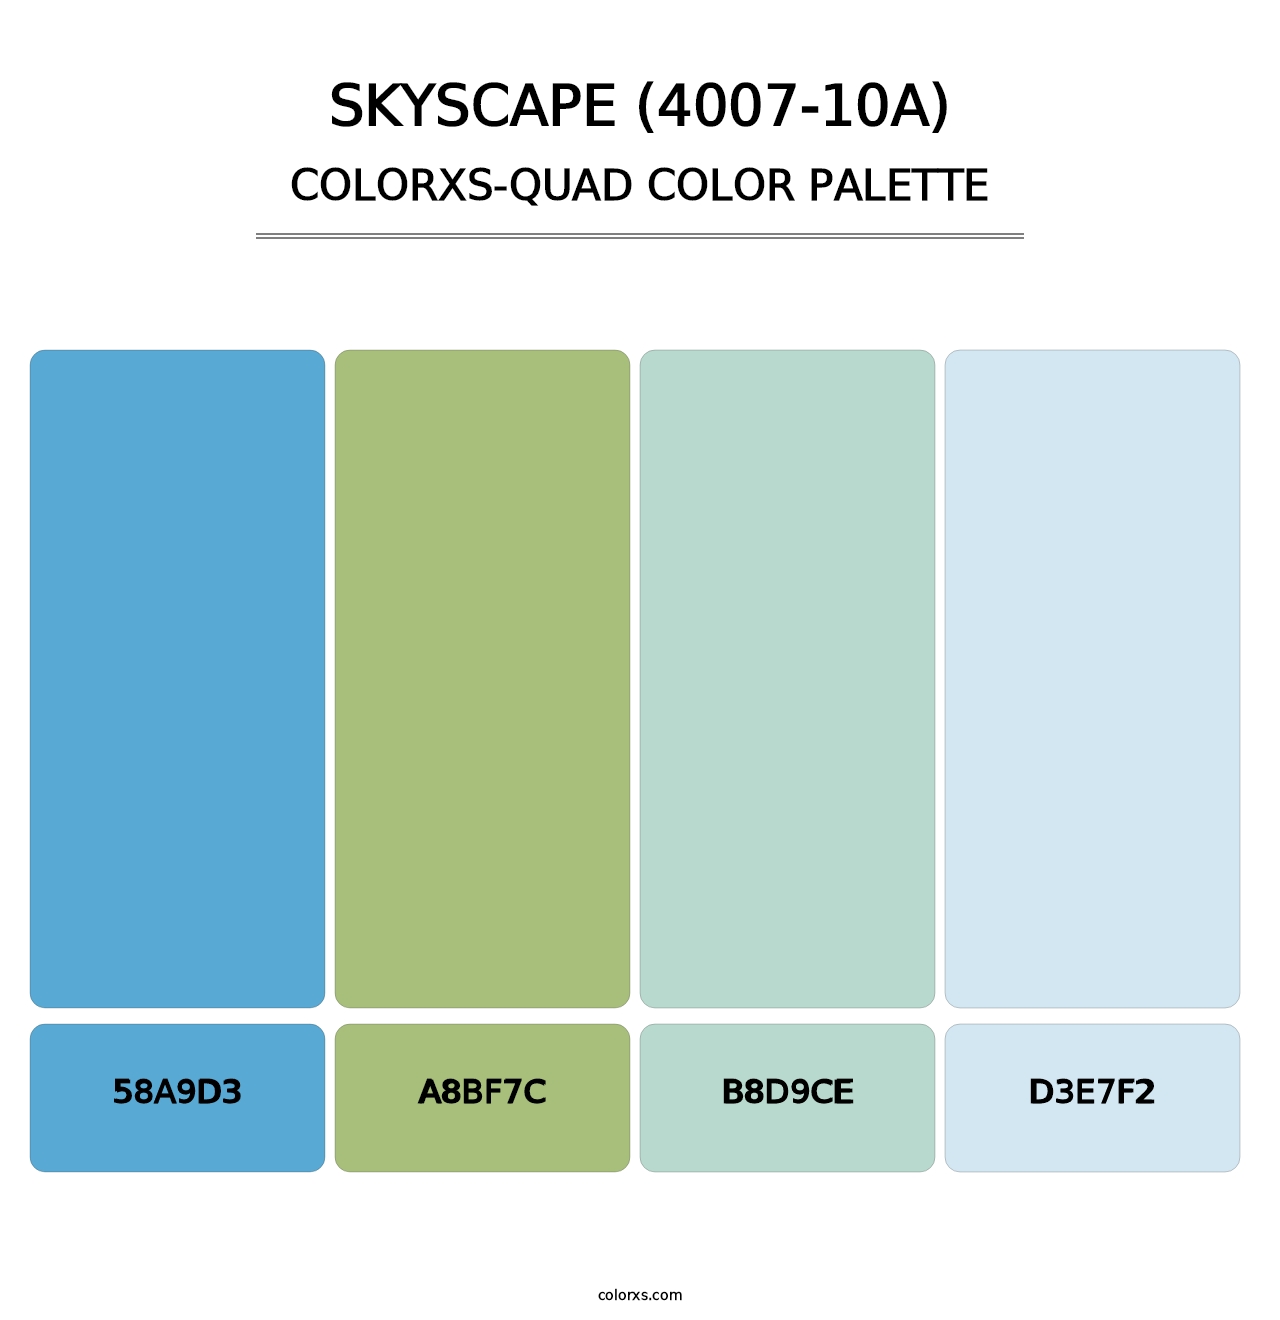 Skyscape (4007-10A) - Colorxs Quad Palette